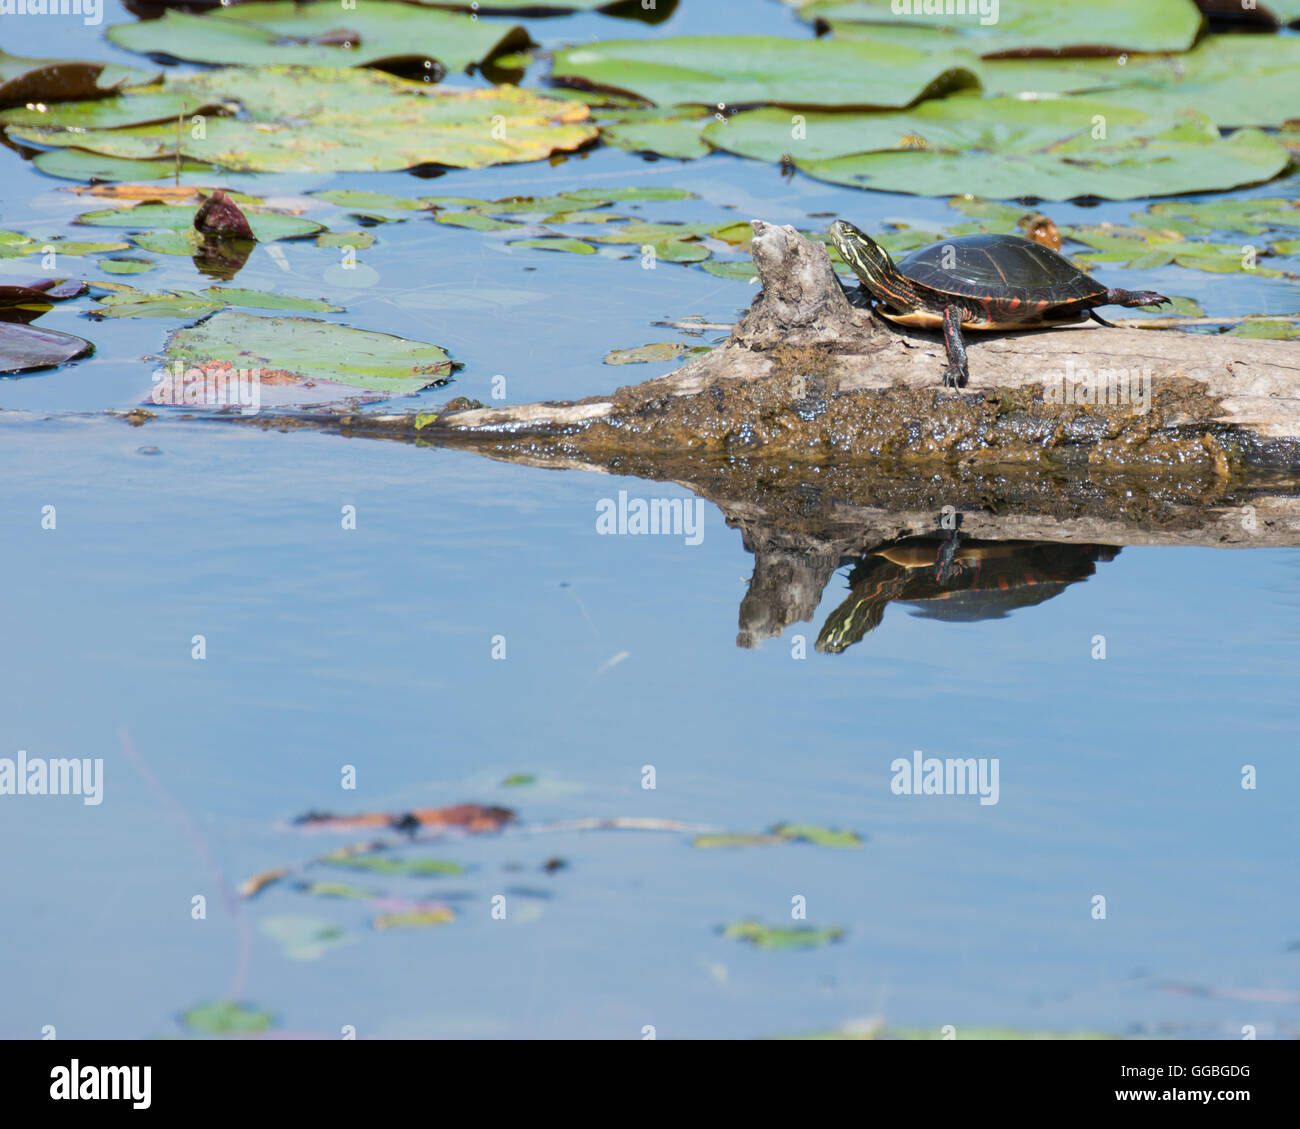 Una tortuga pintada encaramado sobre un registro en un pantano. Foto de stock